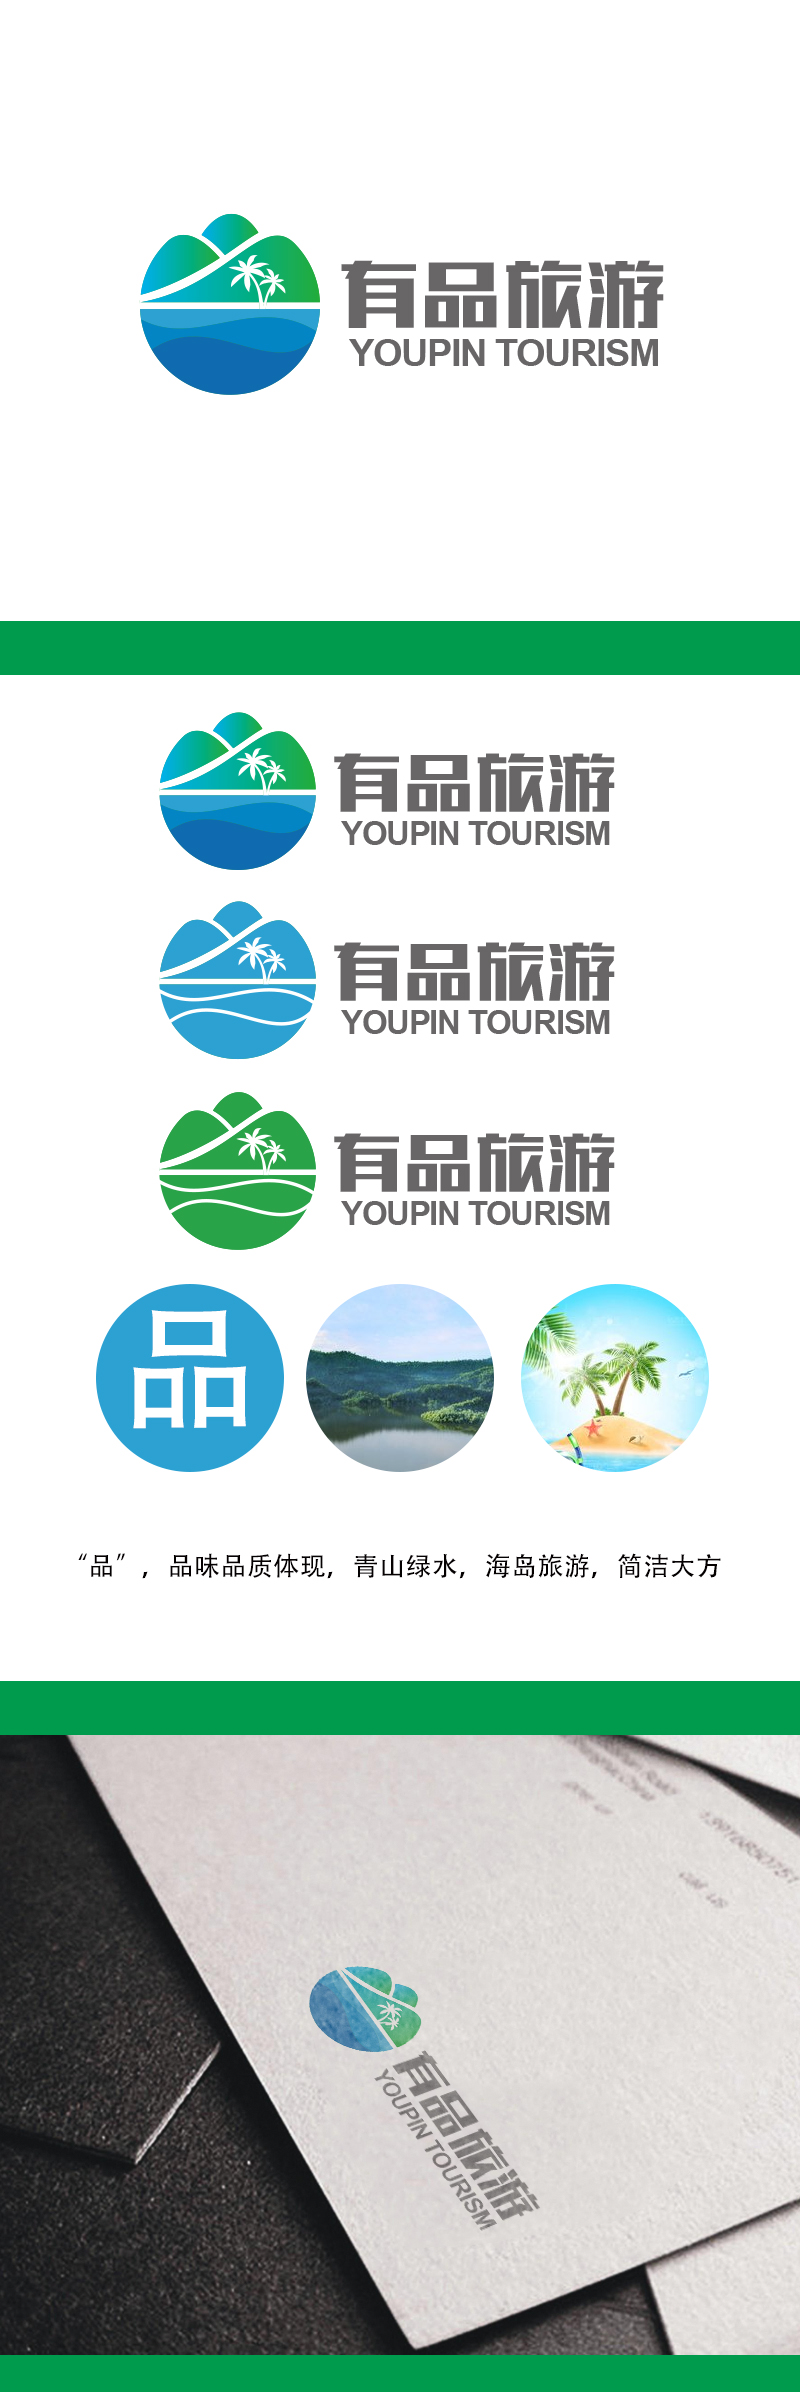 黄安悦的有品旅游logo设计